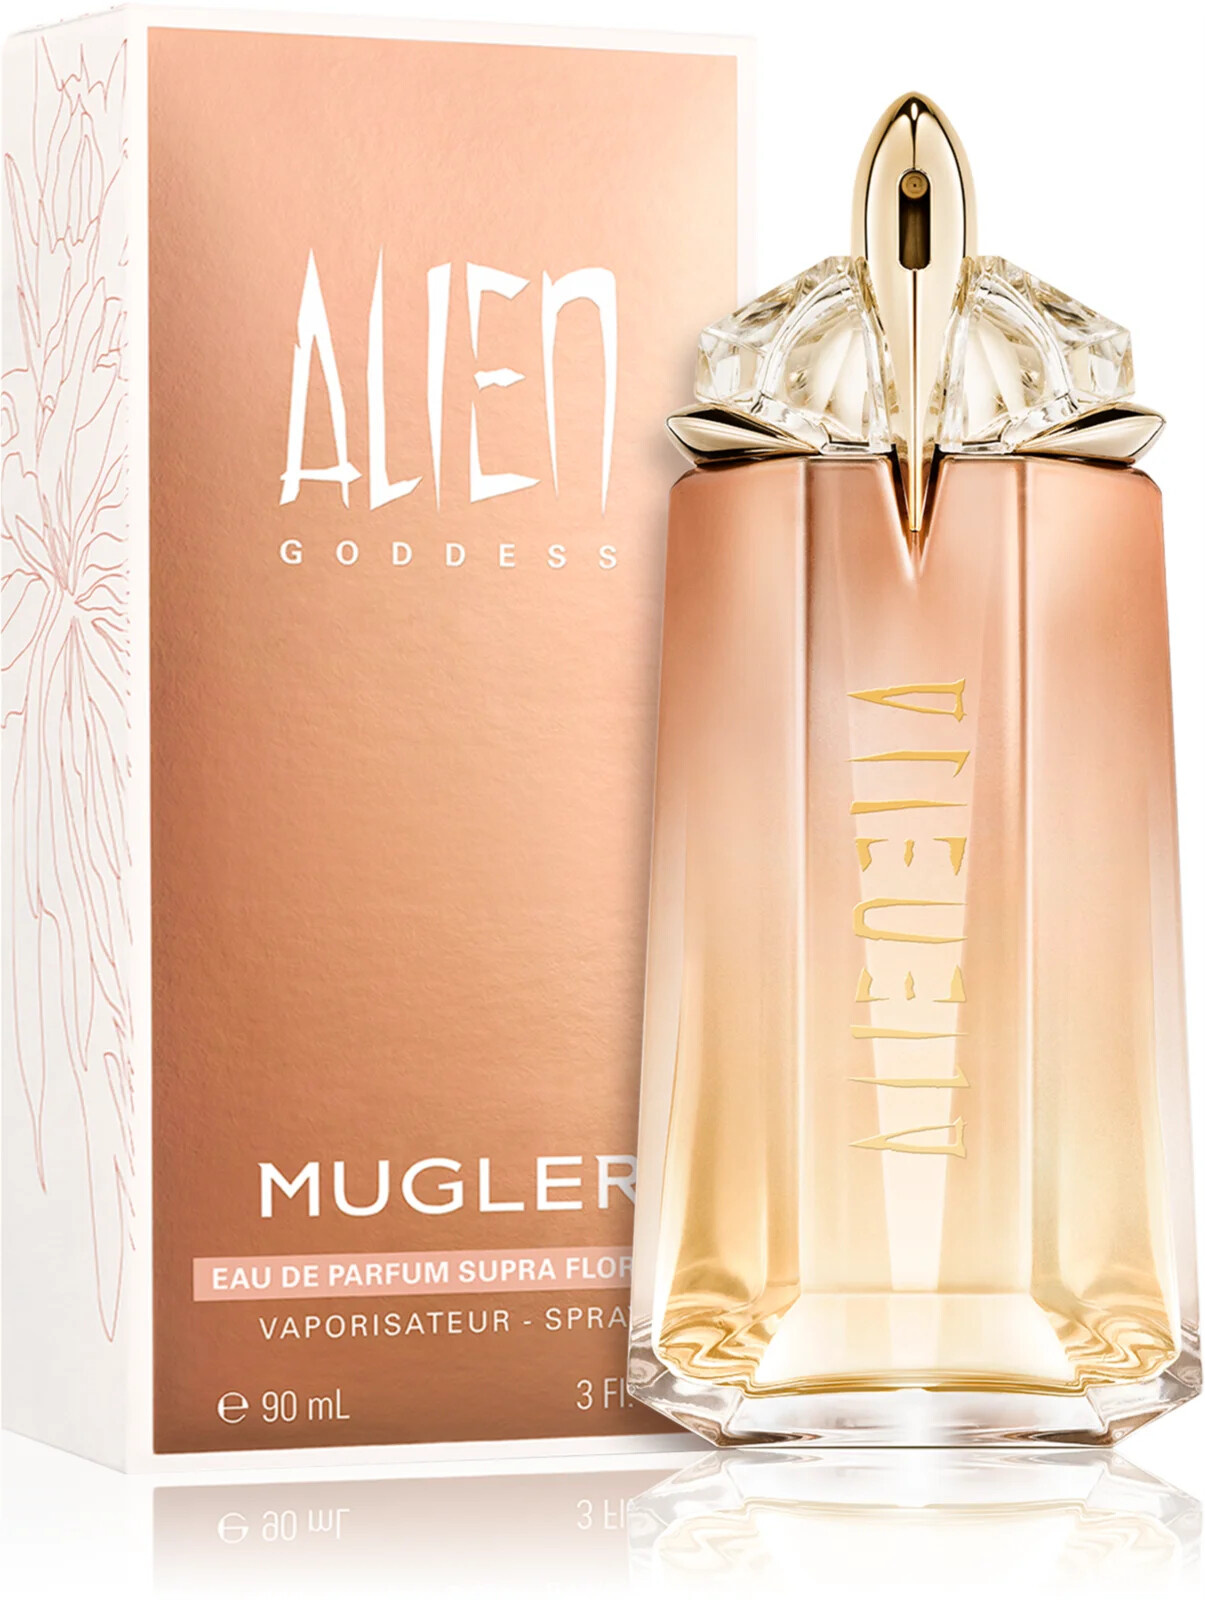 Mugler Alien Goddess Supra Florale parfémovaná voda pro ženy 90 ml